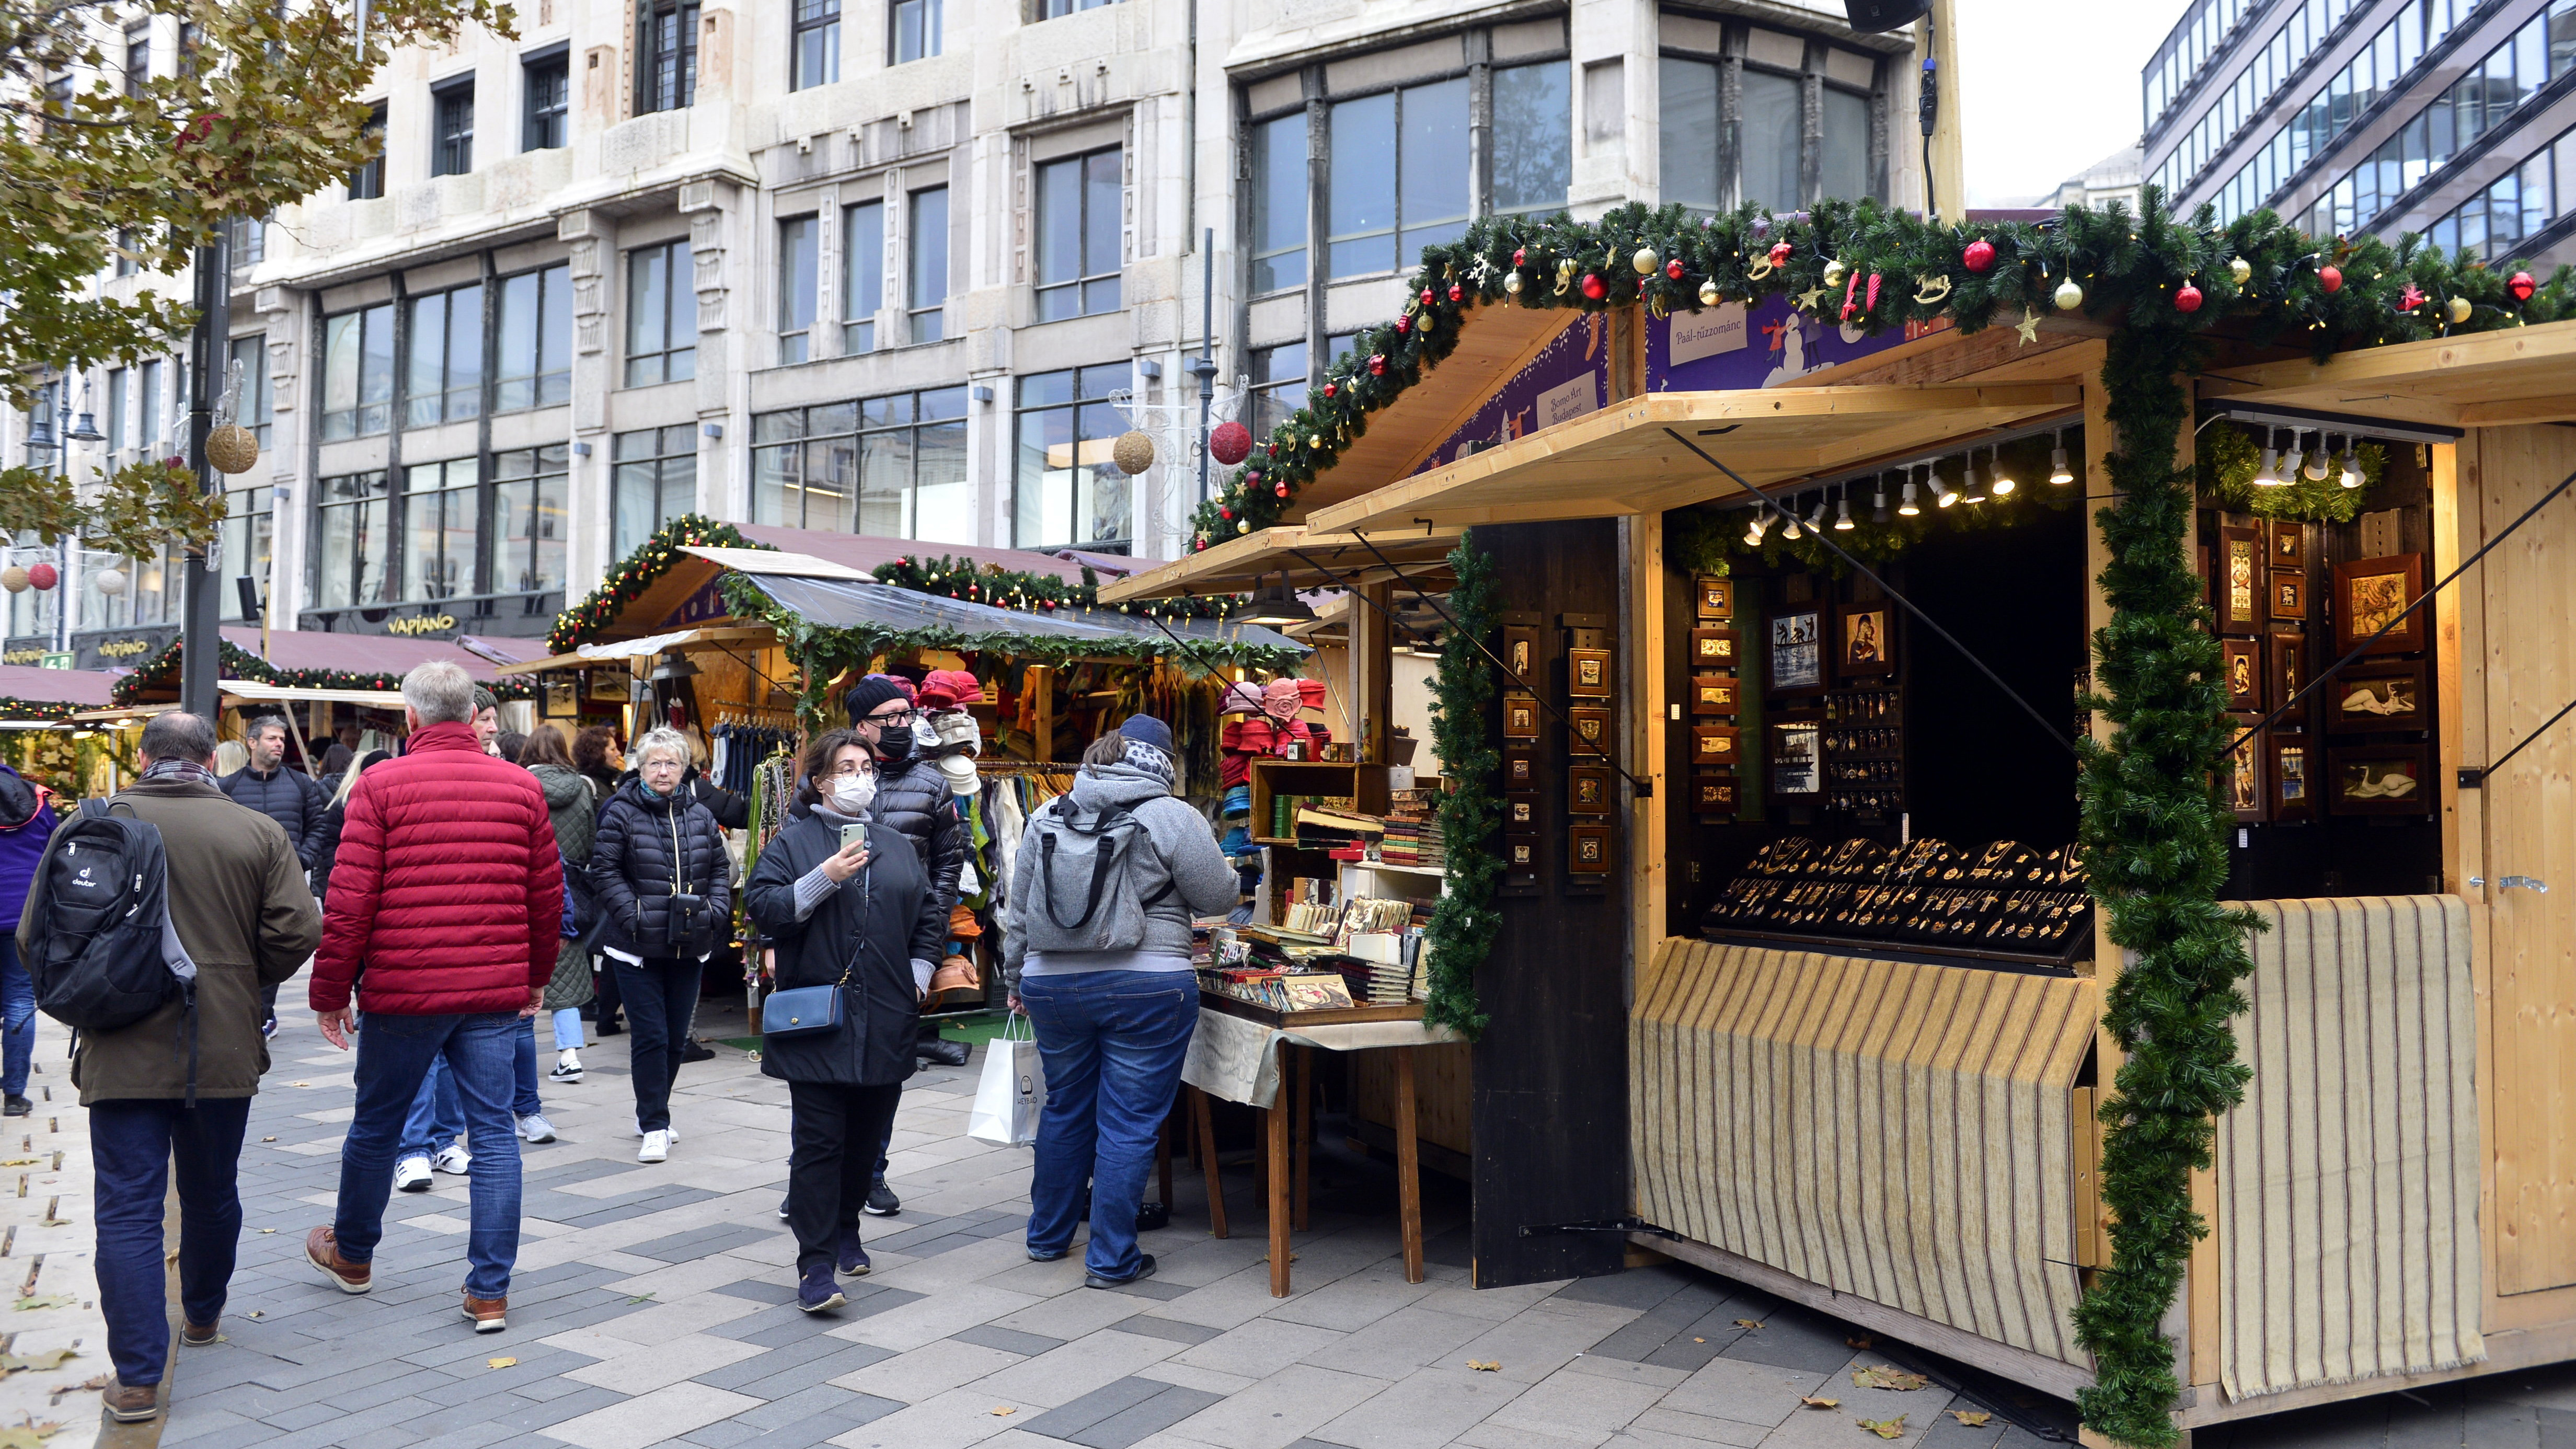 Megnyílt az Adventi és Karácsonyi Vásár a Vörösmarty téren - fotók - Blikk